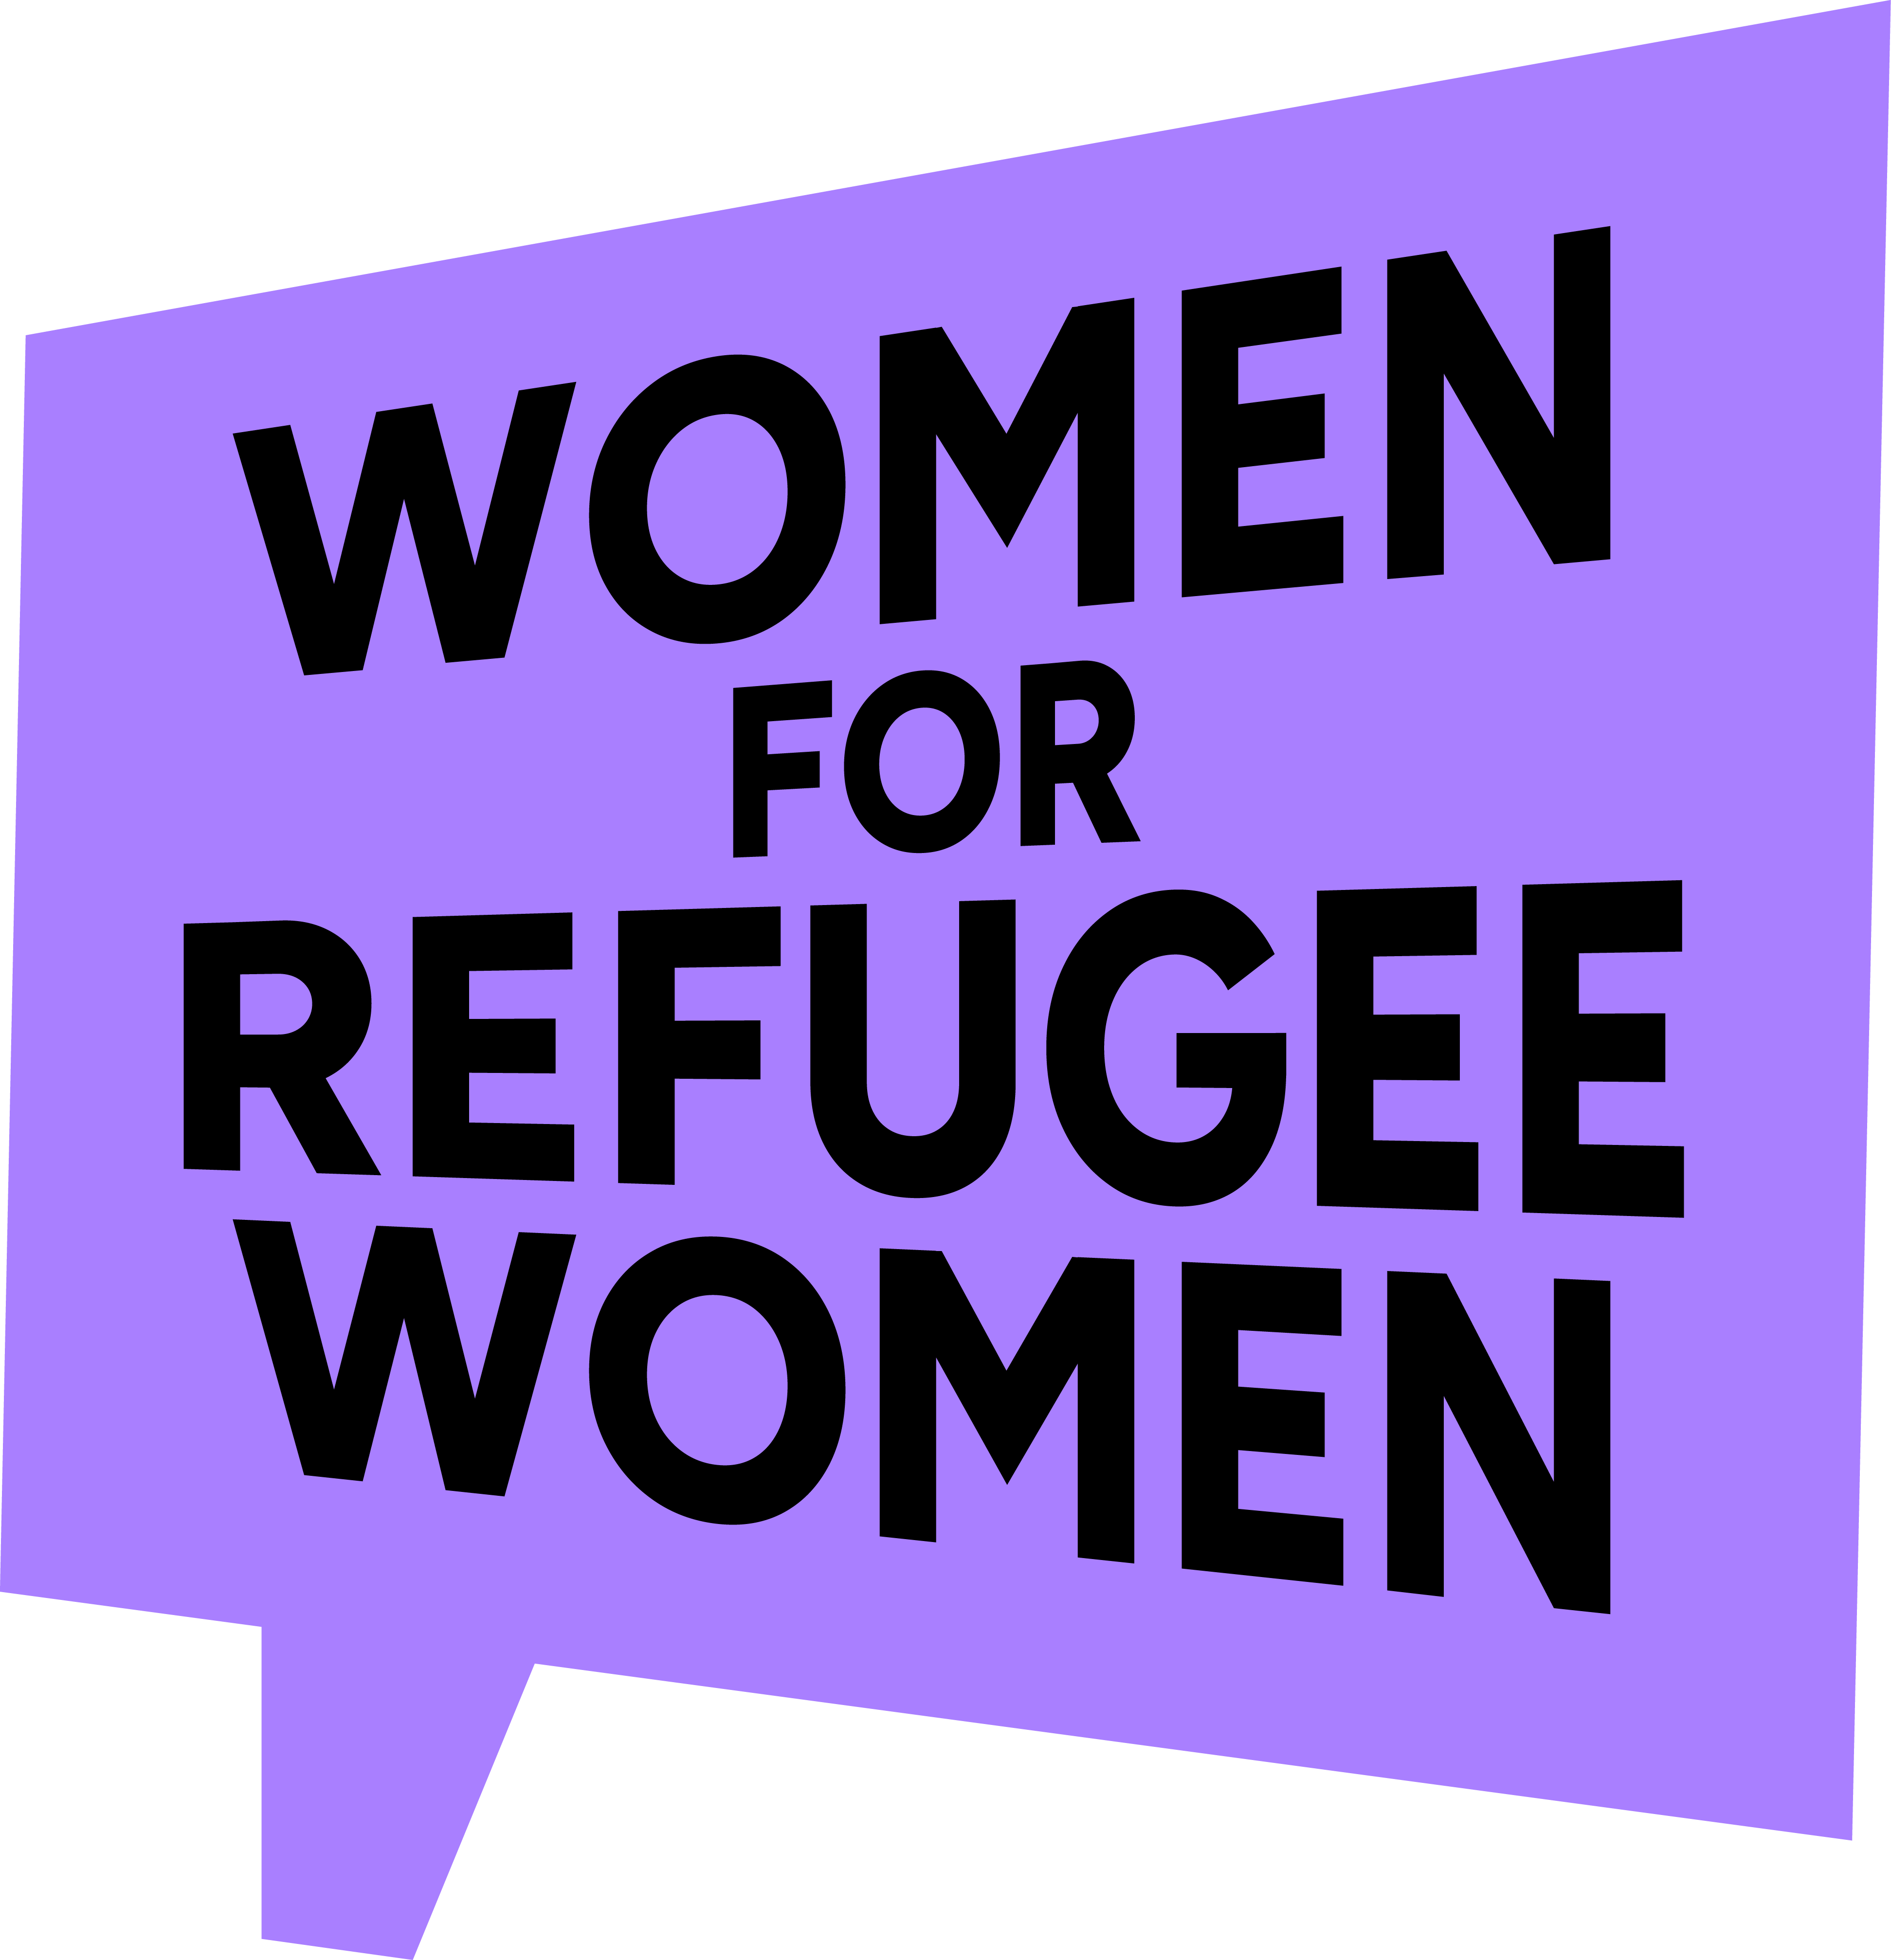 Women for Refugee Women